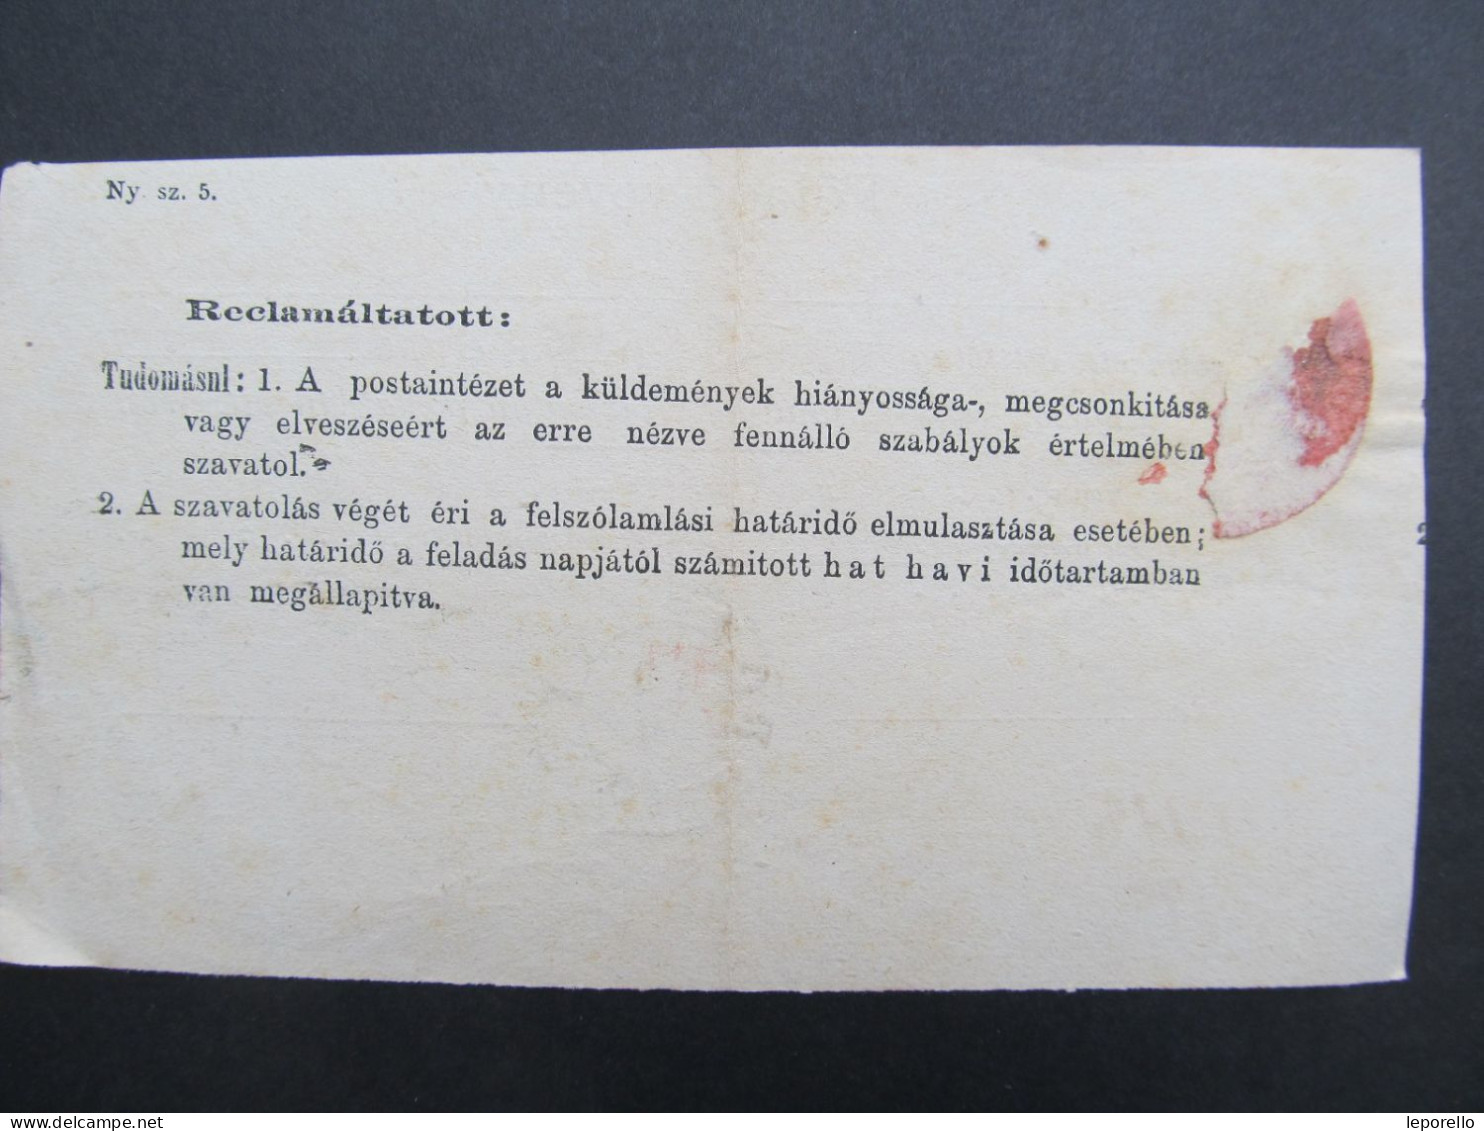 Föladó Vevény Pozsony Bratislava Slovakia 1874 /// P5154 - Briefe U. Dokumente